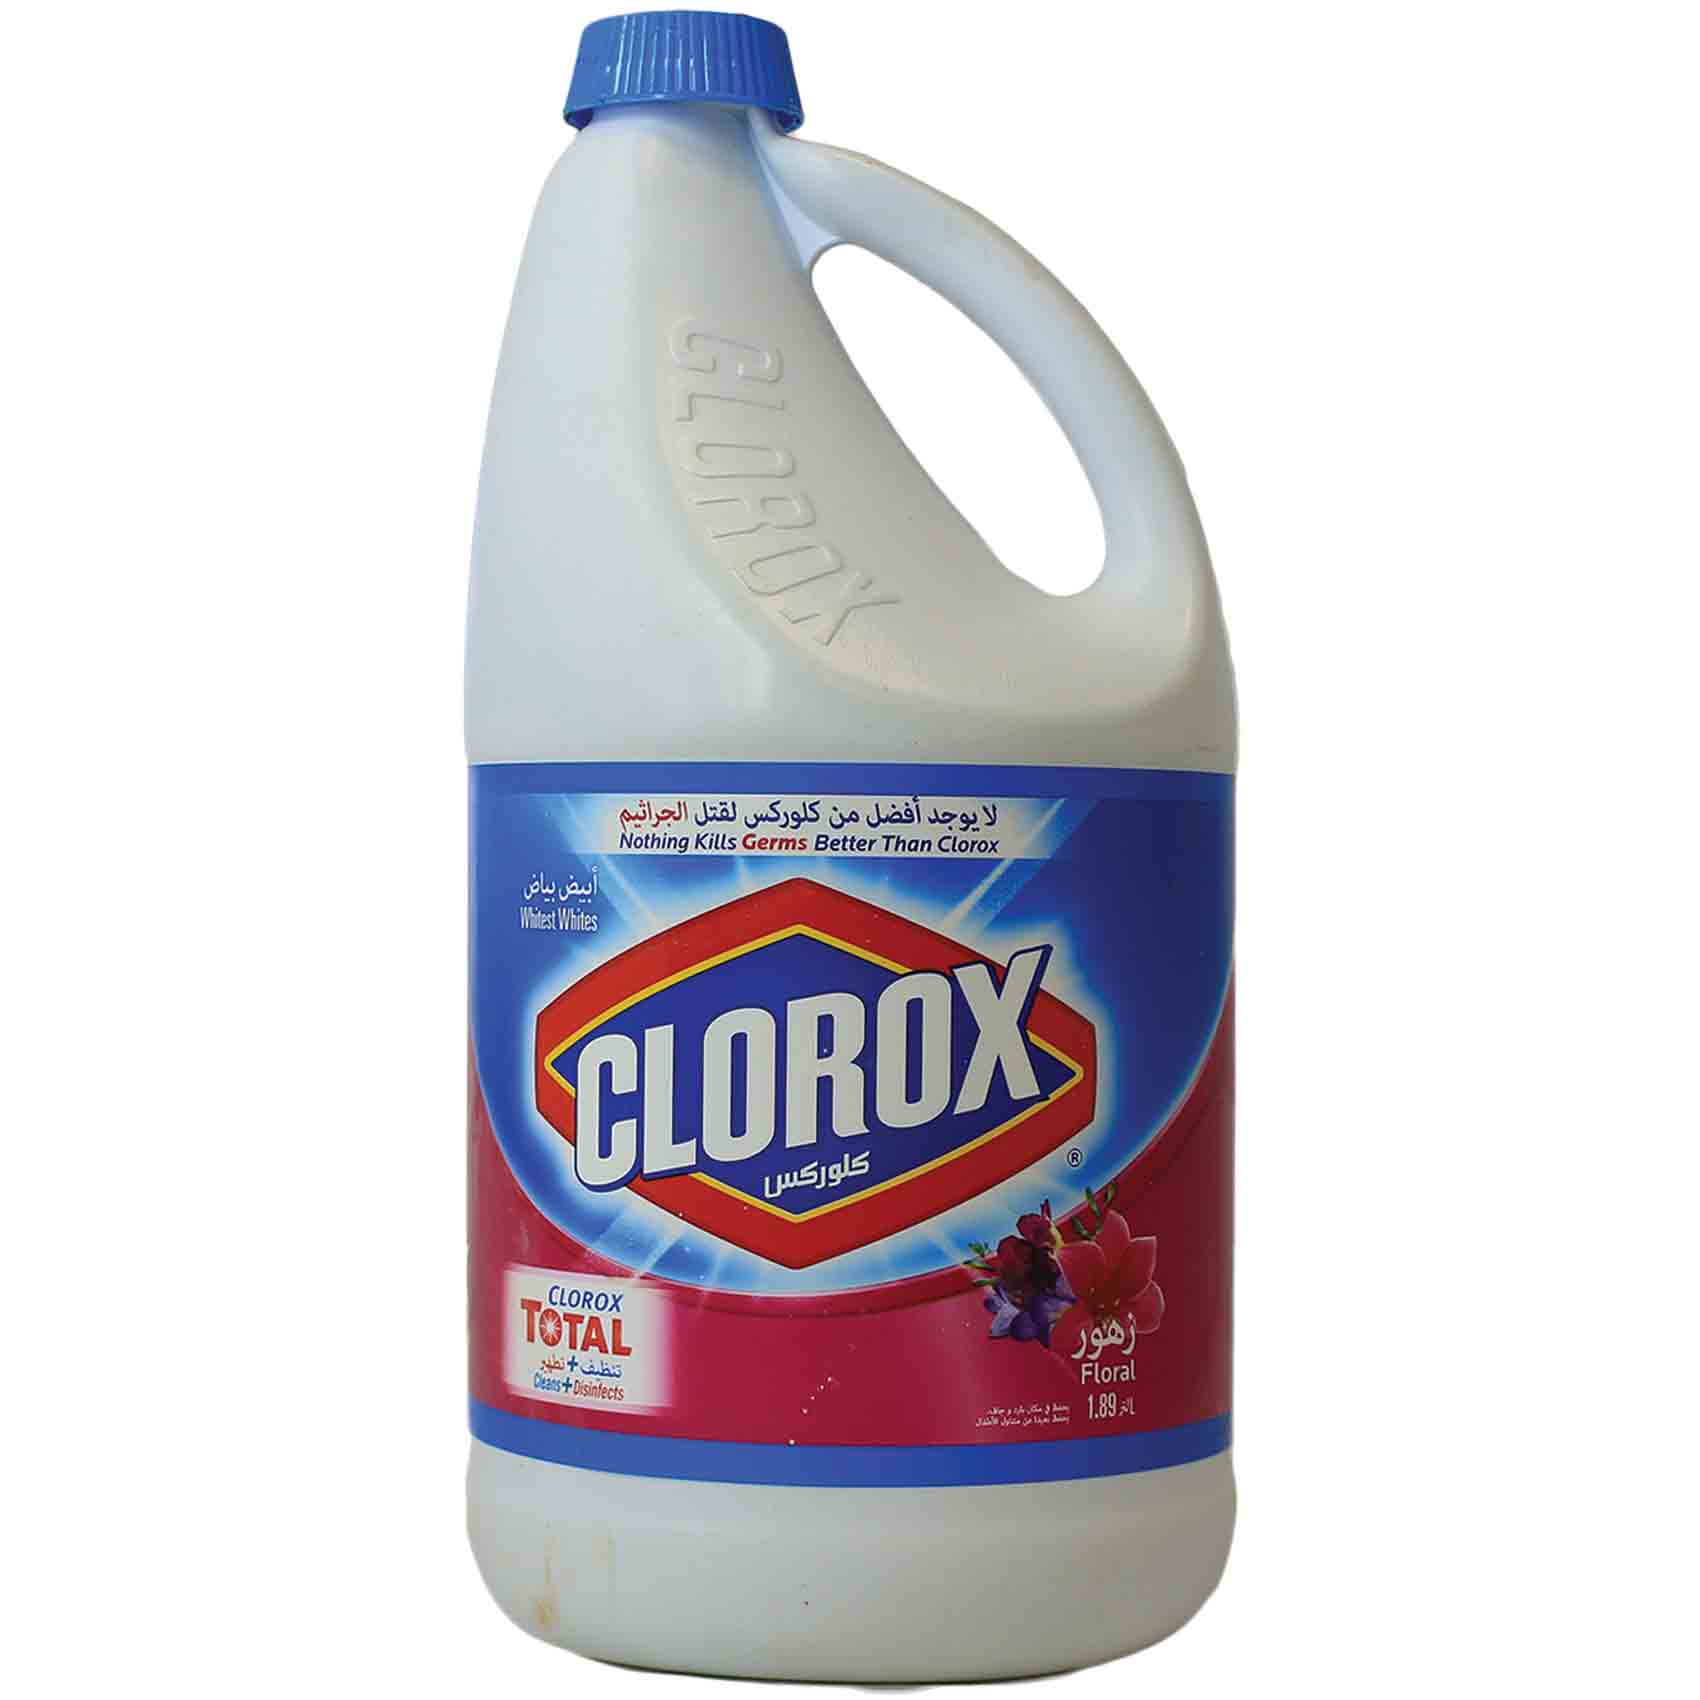 Clorox Bleach Floral 1.89 Liter